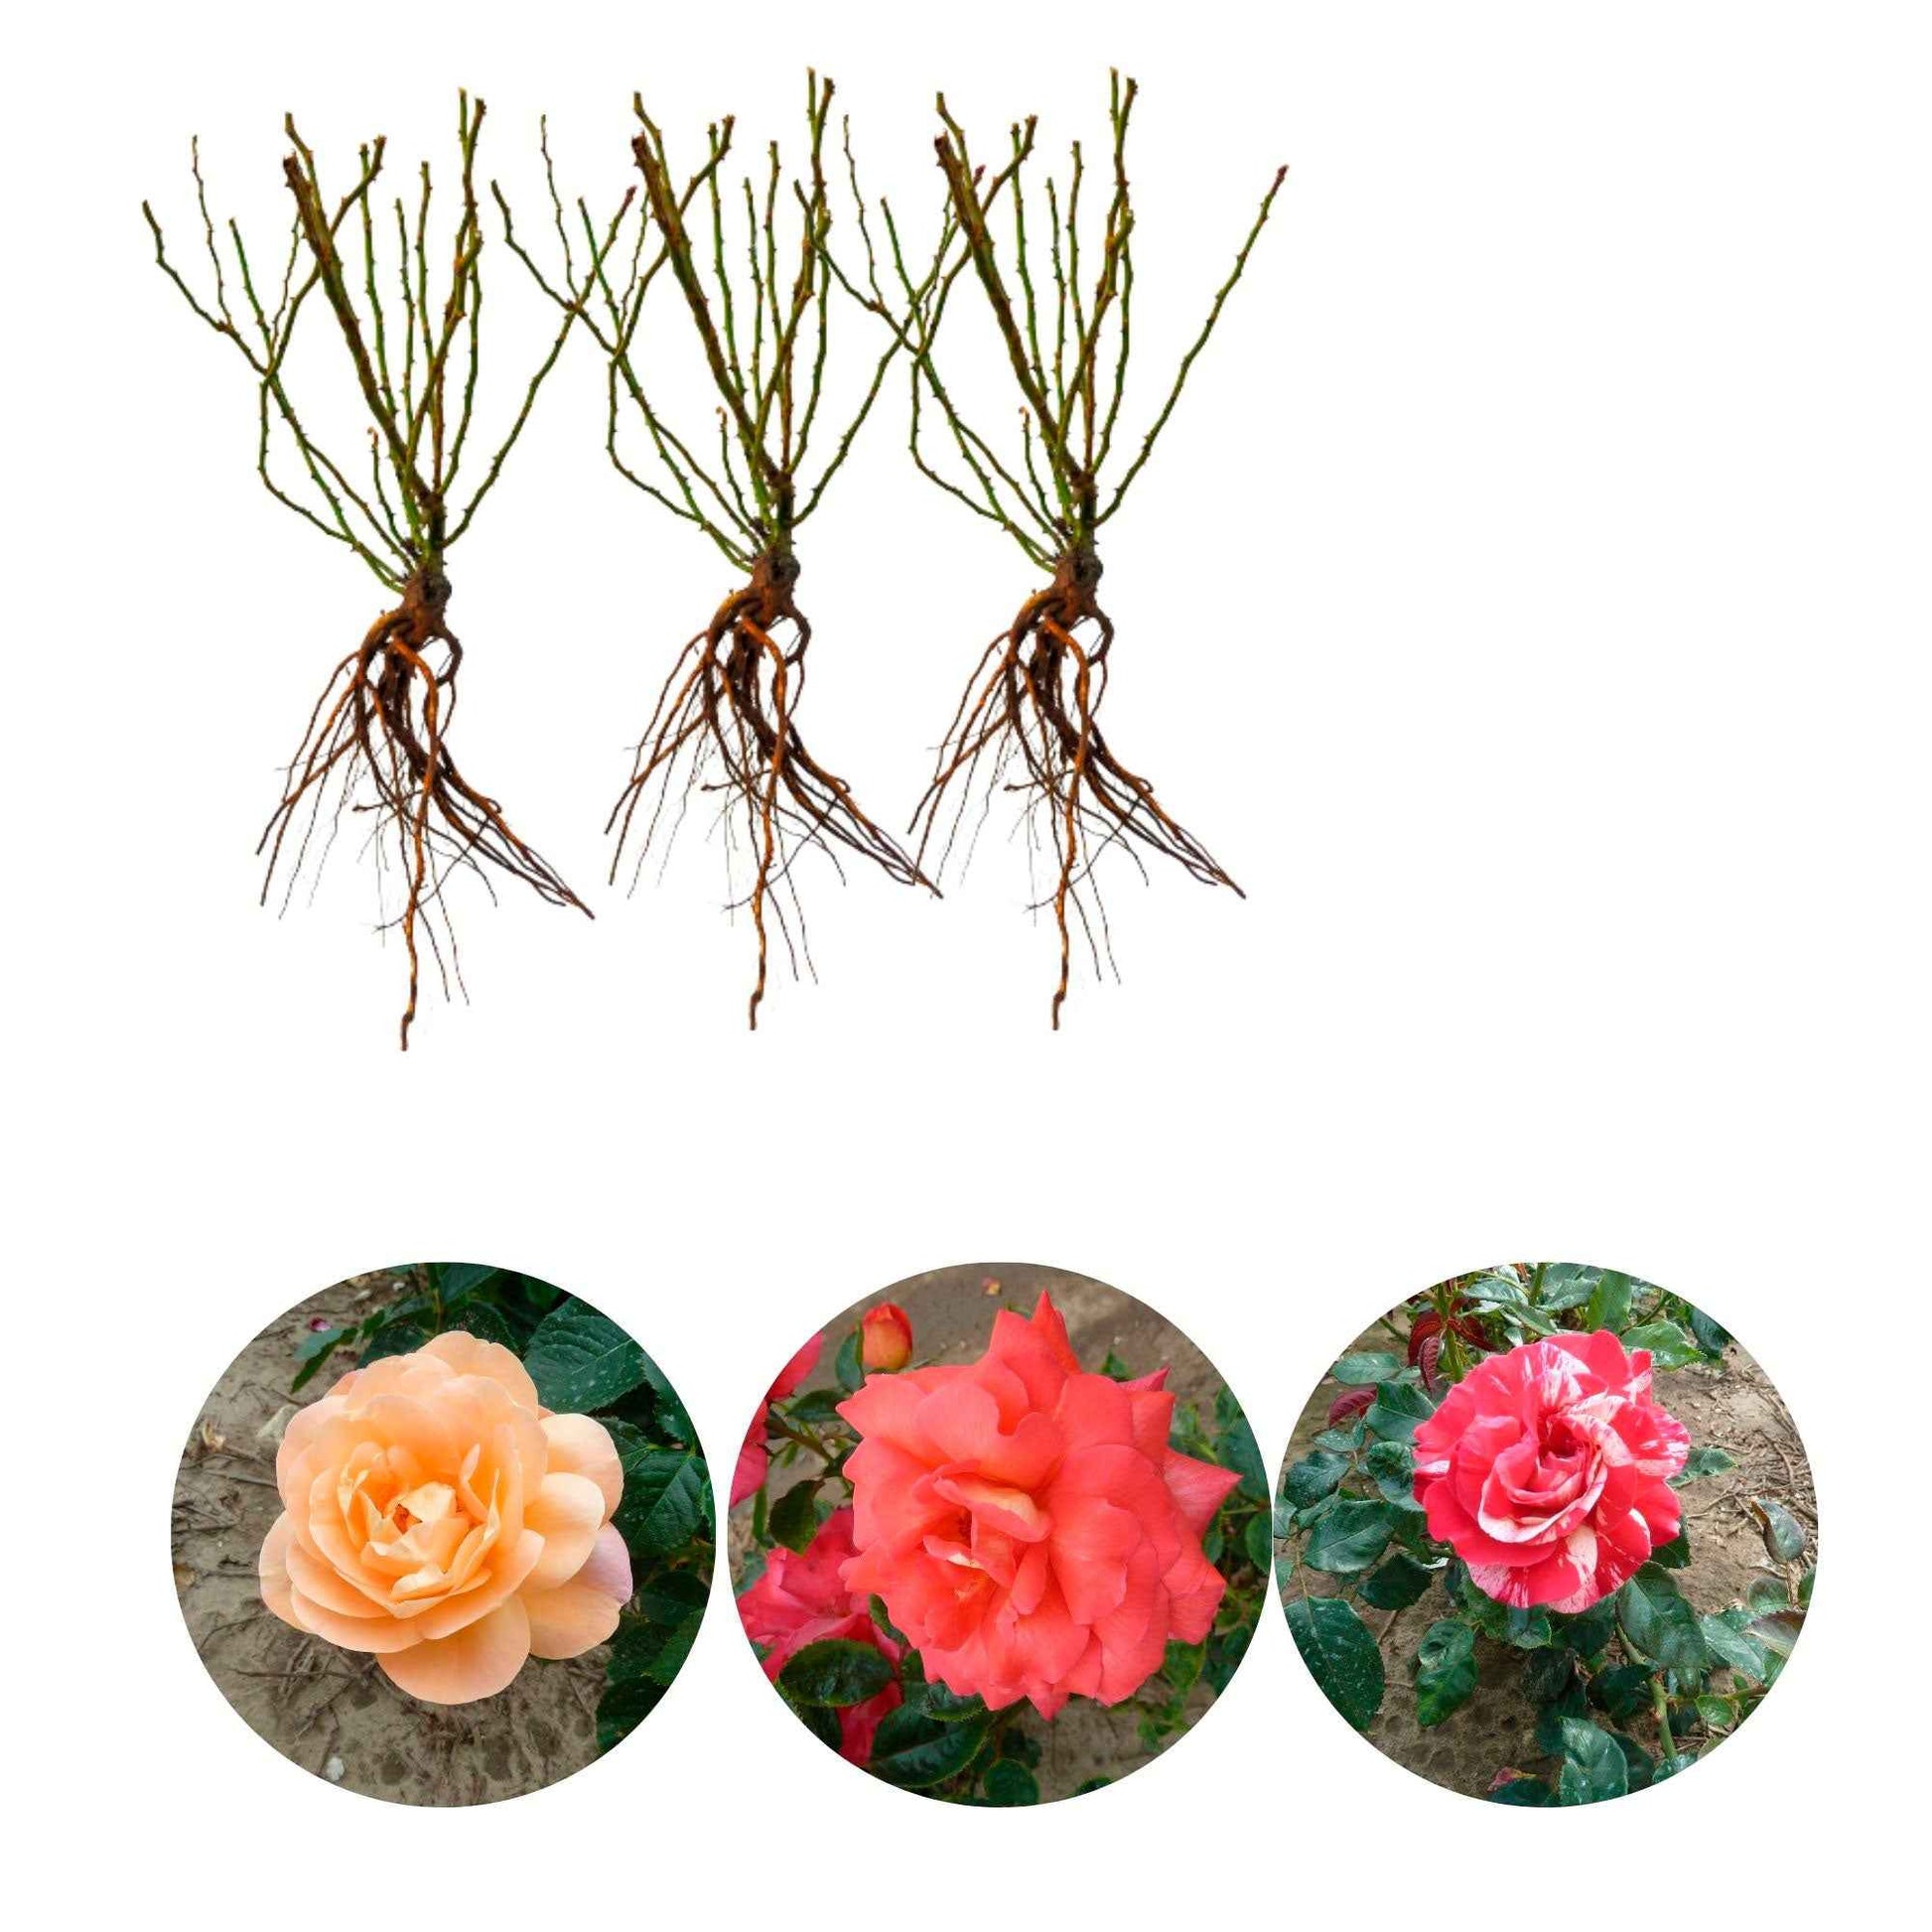 3x Grootbloemige roos - Mix Geurig en Meerkleurig Gemengde kleuren - Bare rooted - Winterhard - Plantsoort